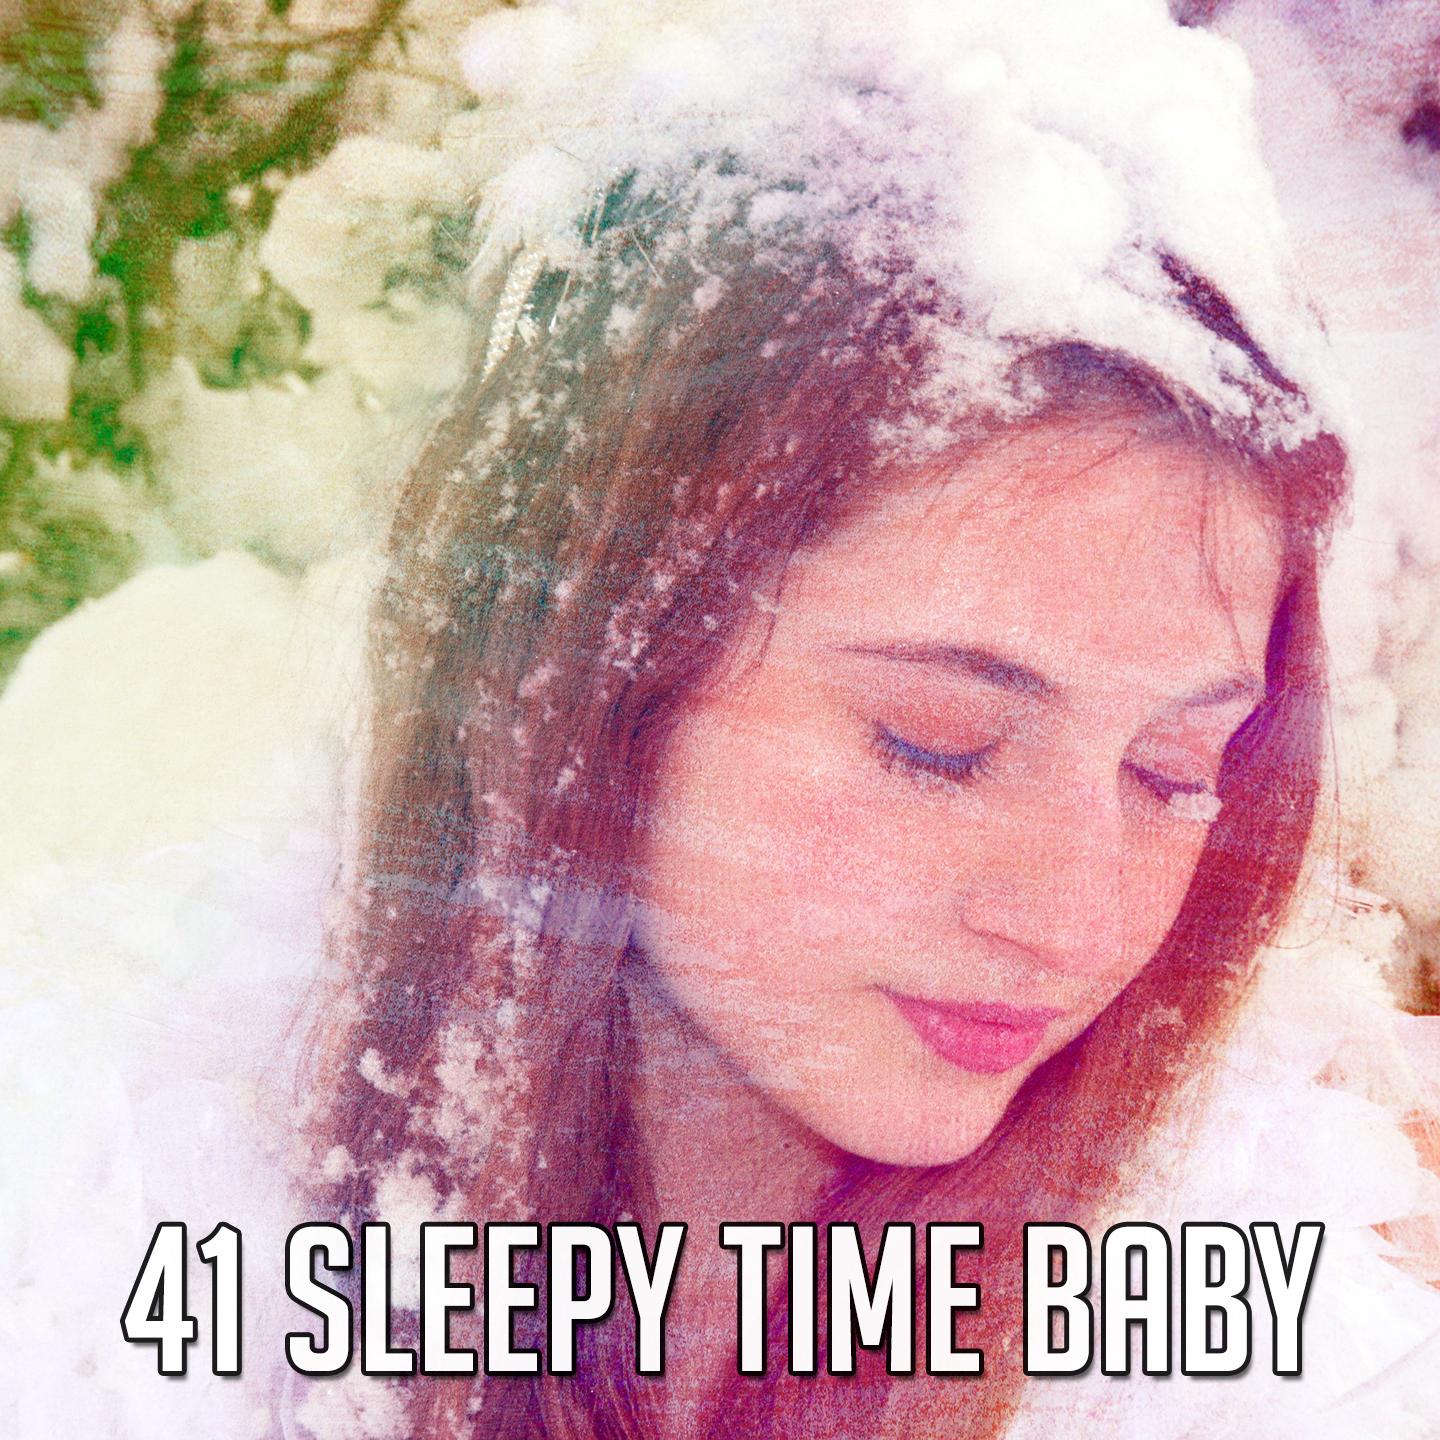 41 Sleepy Time Baby